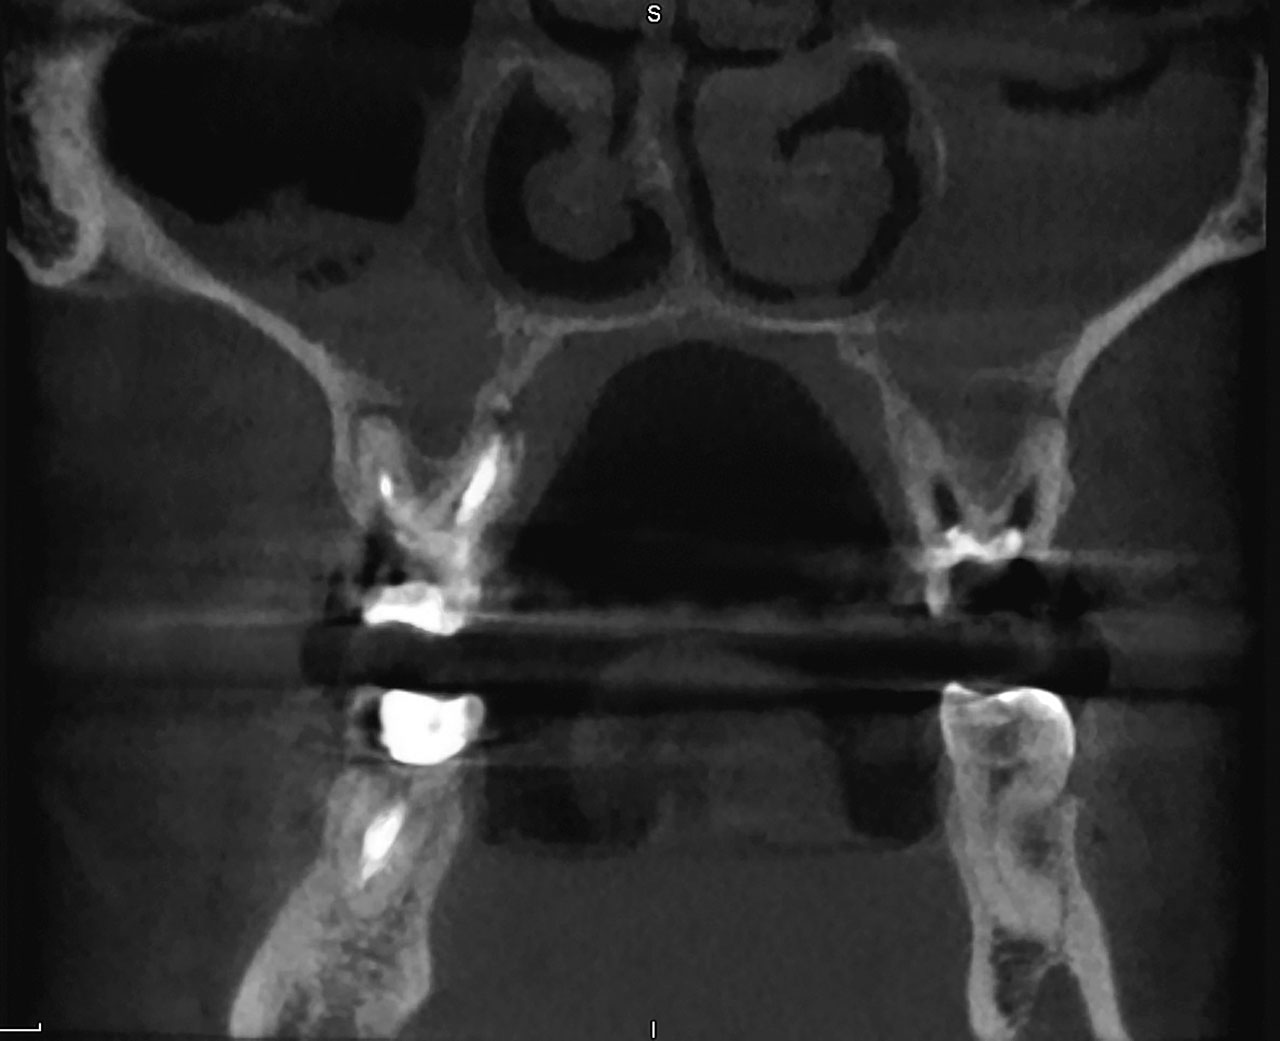 Abb. 3 Beidseitige OSM, ausgehend von apikalen Parodontitiden der Zähne 16 und 26. Anamnestisch wurde HNO-ärztlich eine persistierende CRS diagnostiziert und funktionell-­endoskopisch operiert, jedoch ohne Erfolg.